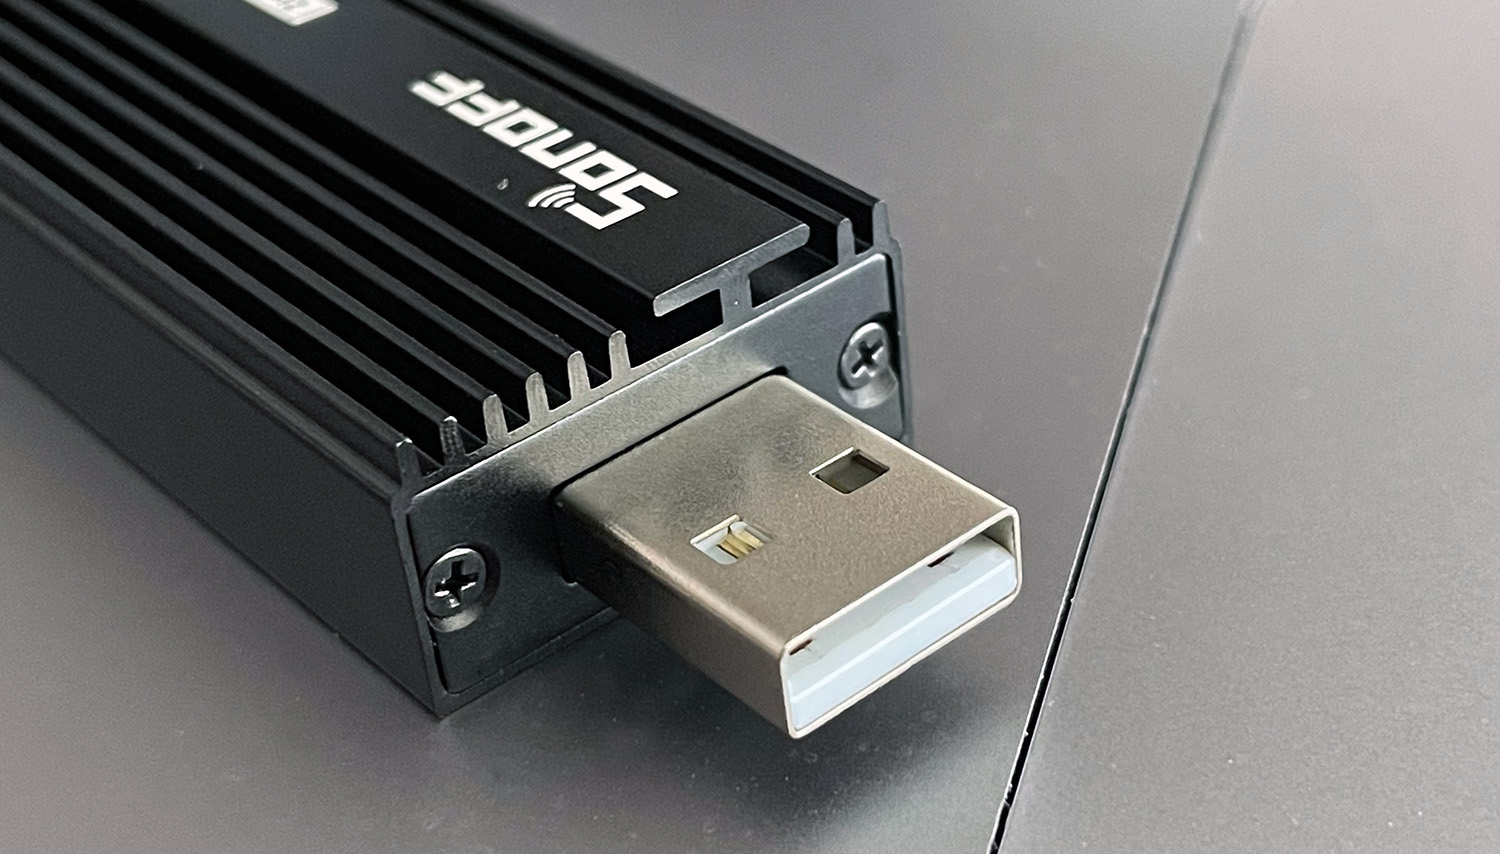 ITEAD Sonoff ZigBee 3.0 USB Dongle Plus - USB viti